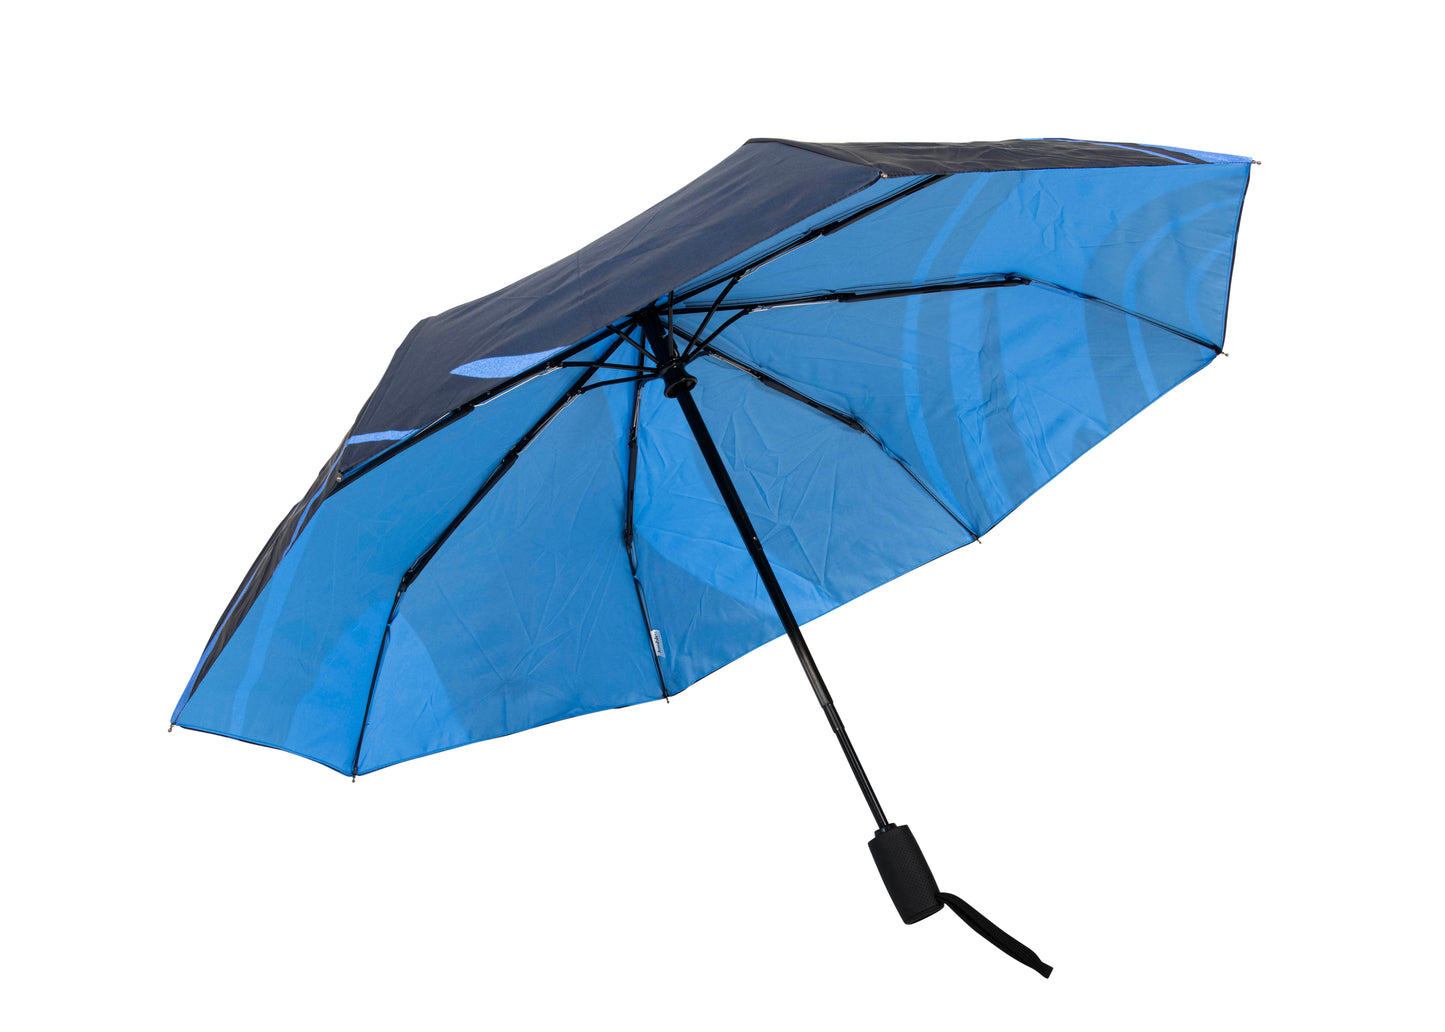 Ups & Downs Umbrella - Light Blue